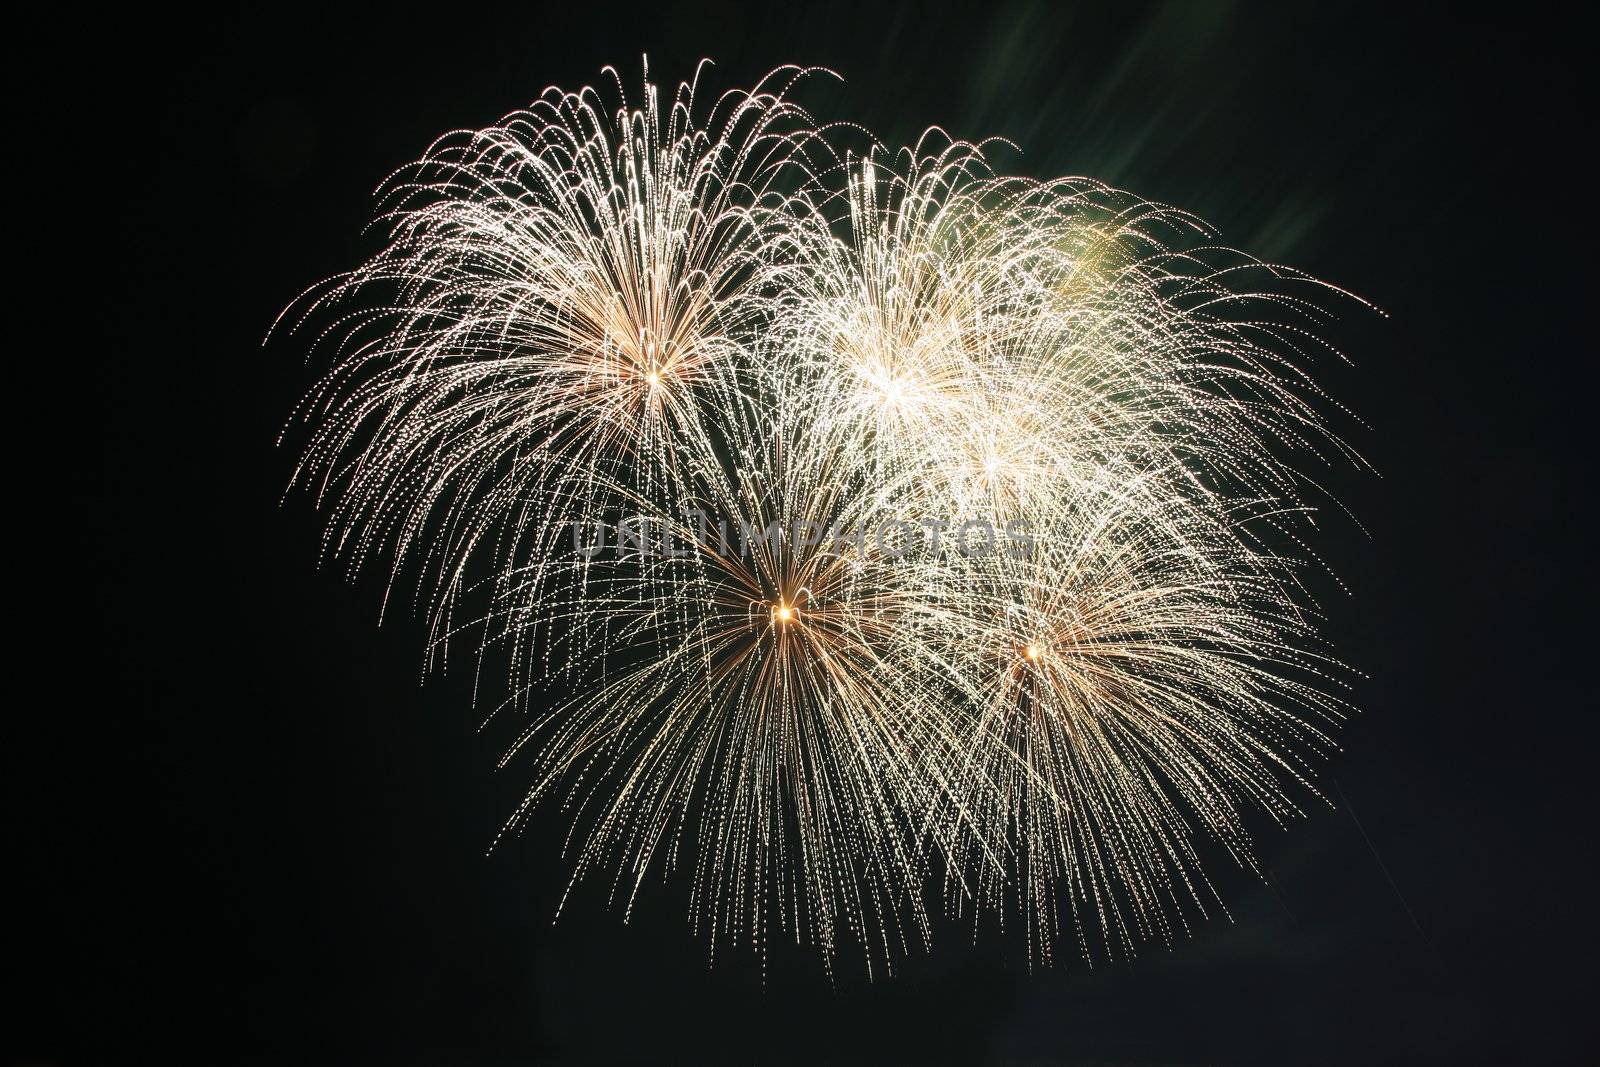 koosh ball fireworks by jonasbsl